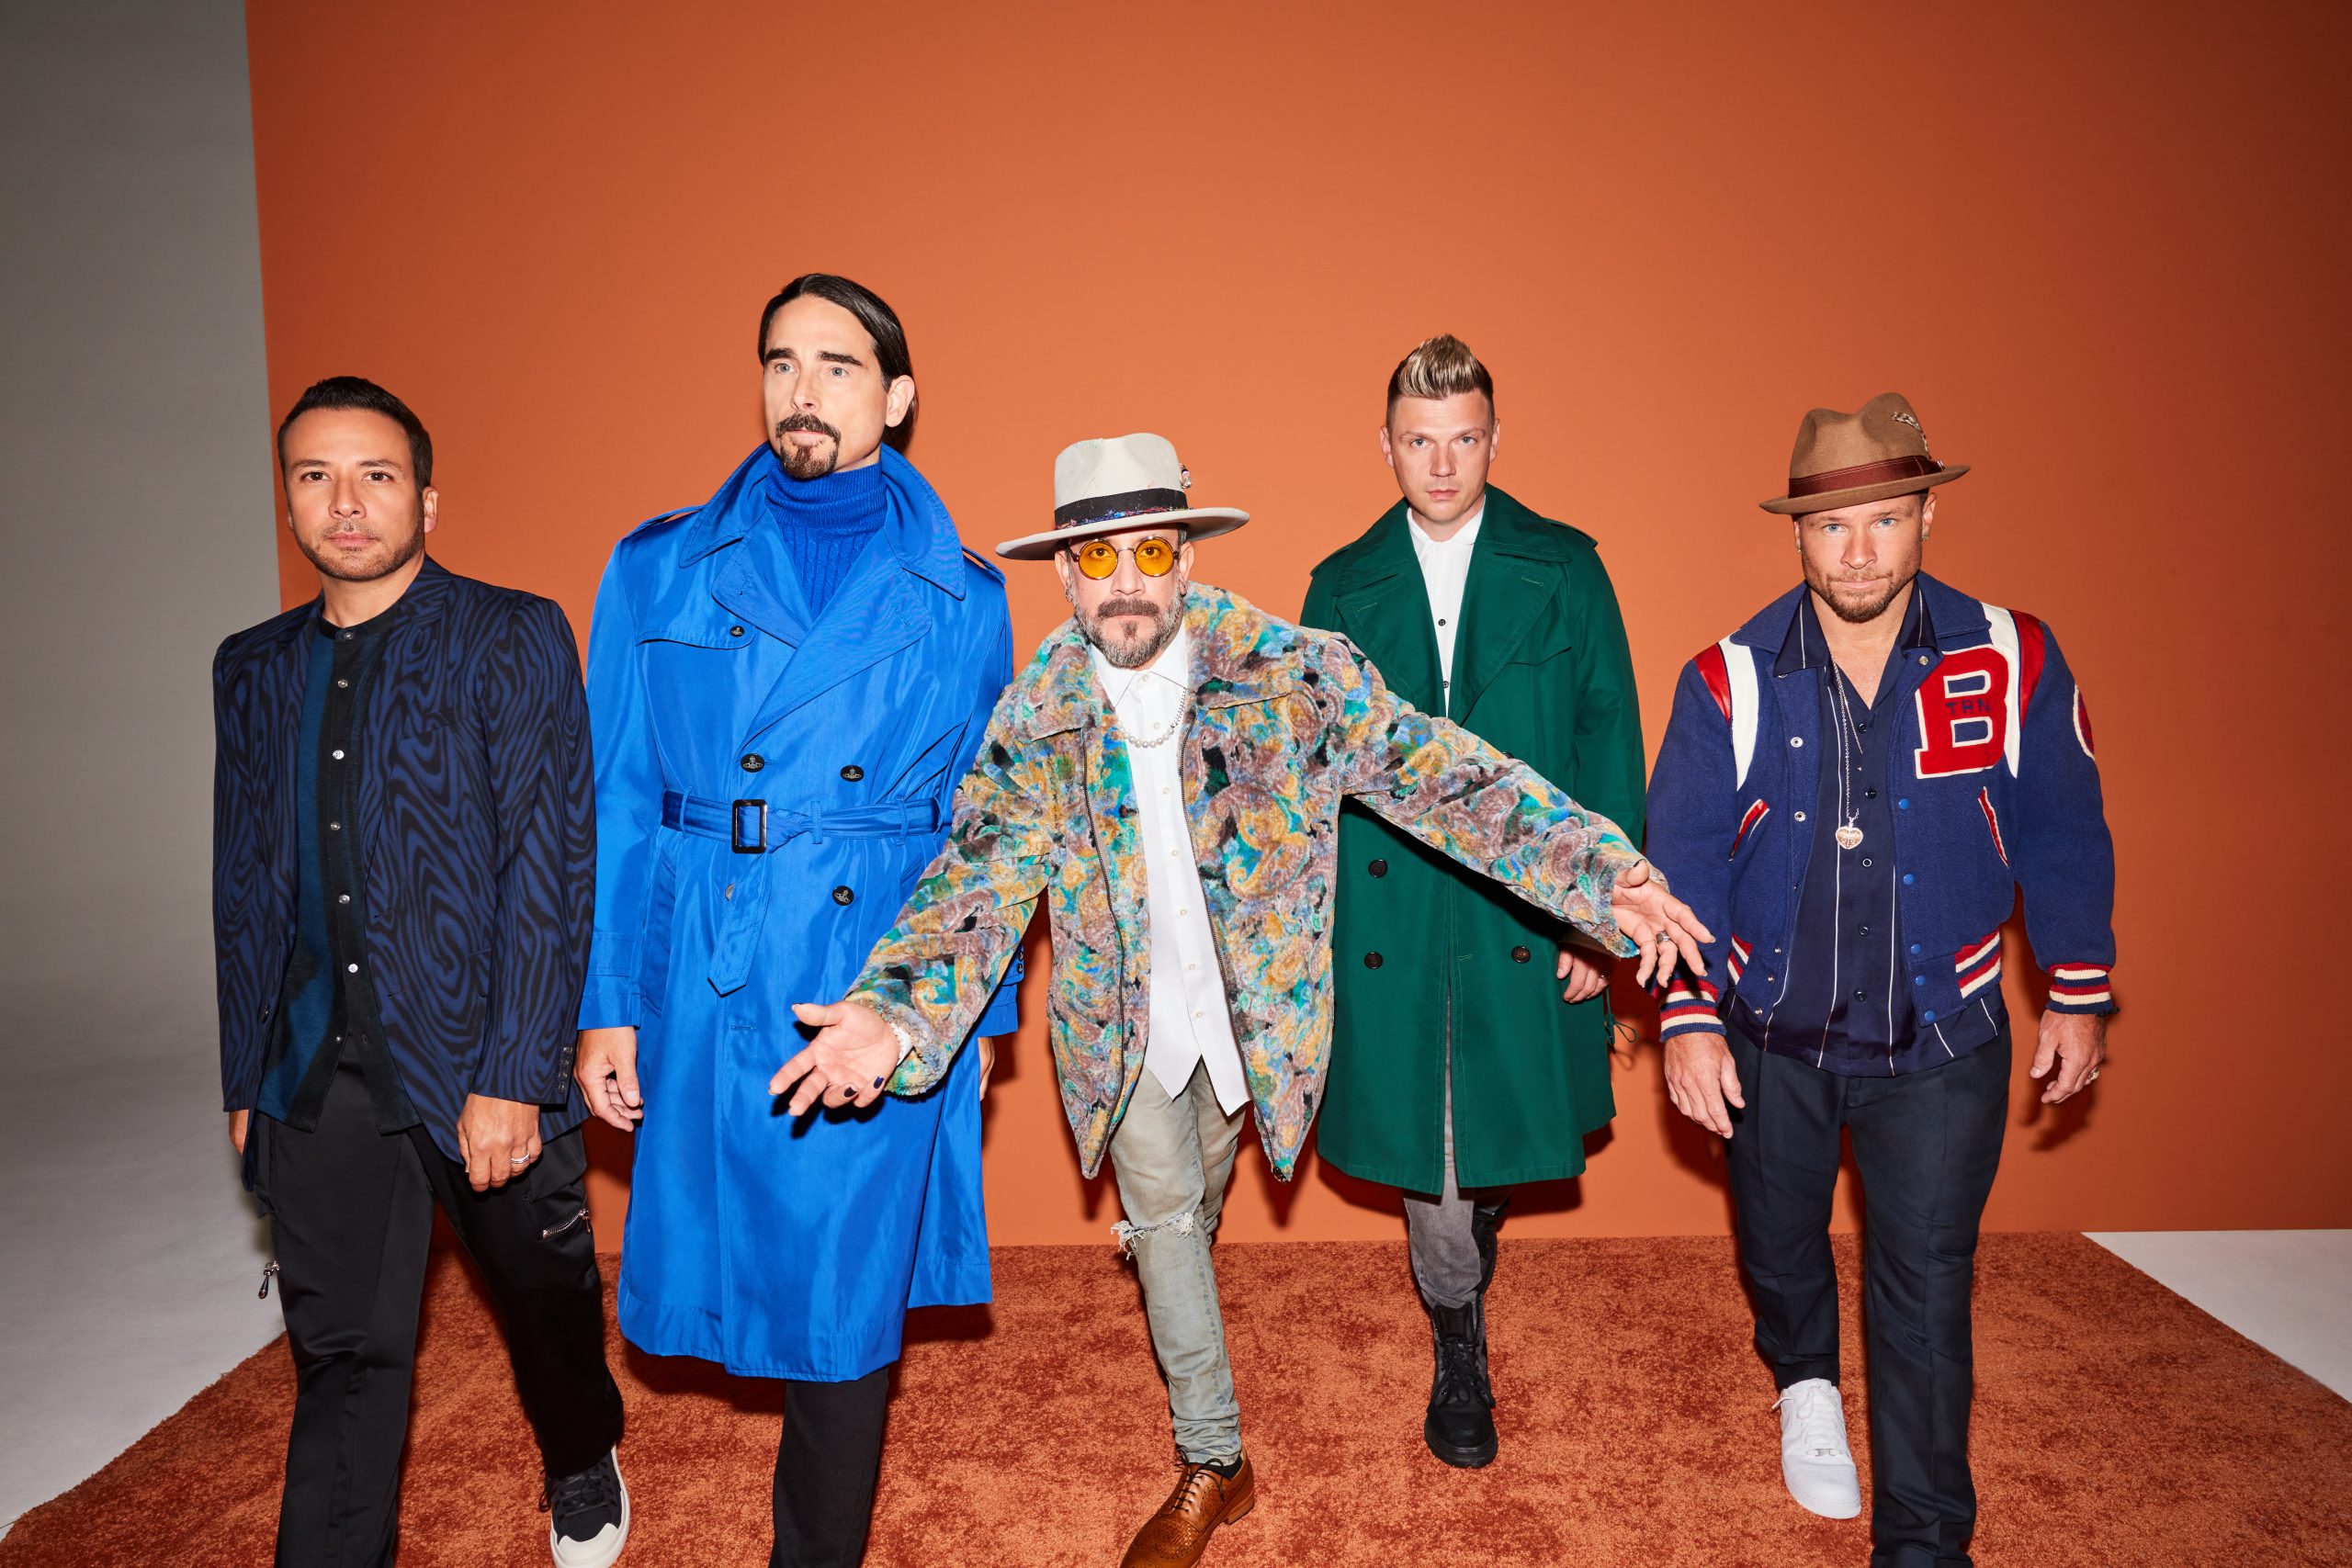 Backstreet Boys' Qatar Concert – Tickets Gone in a Flash